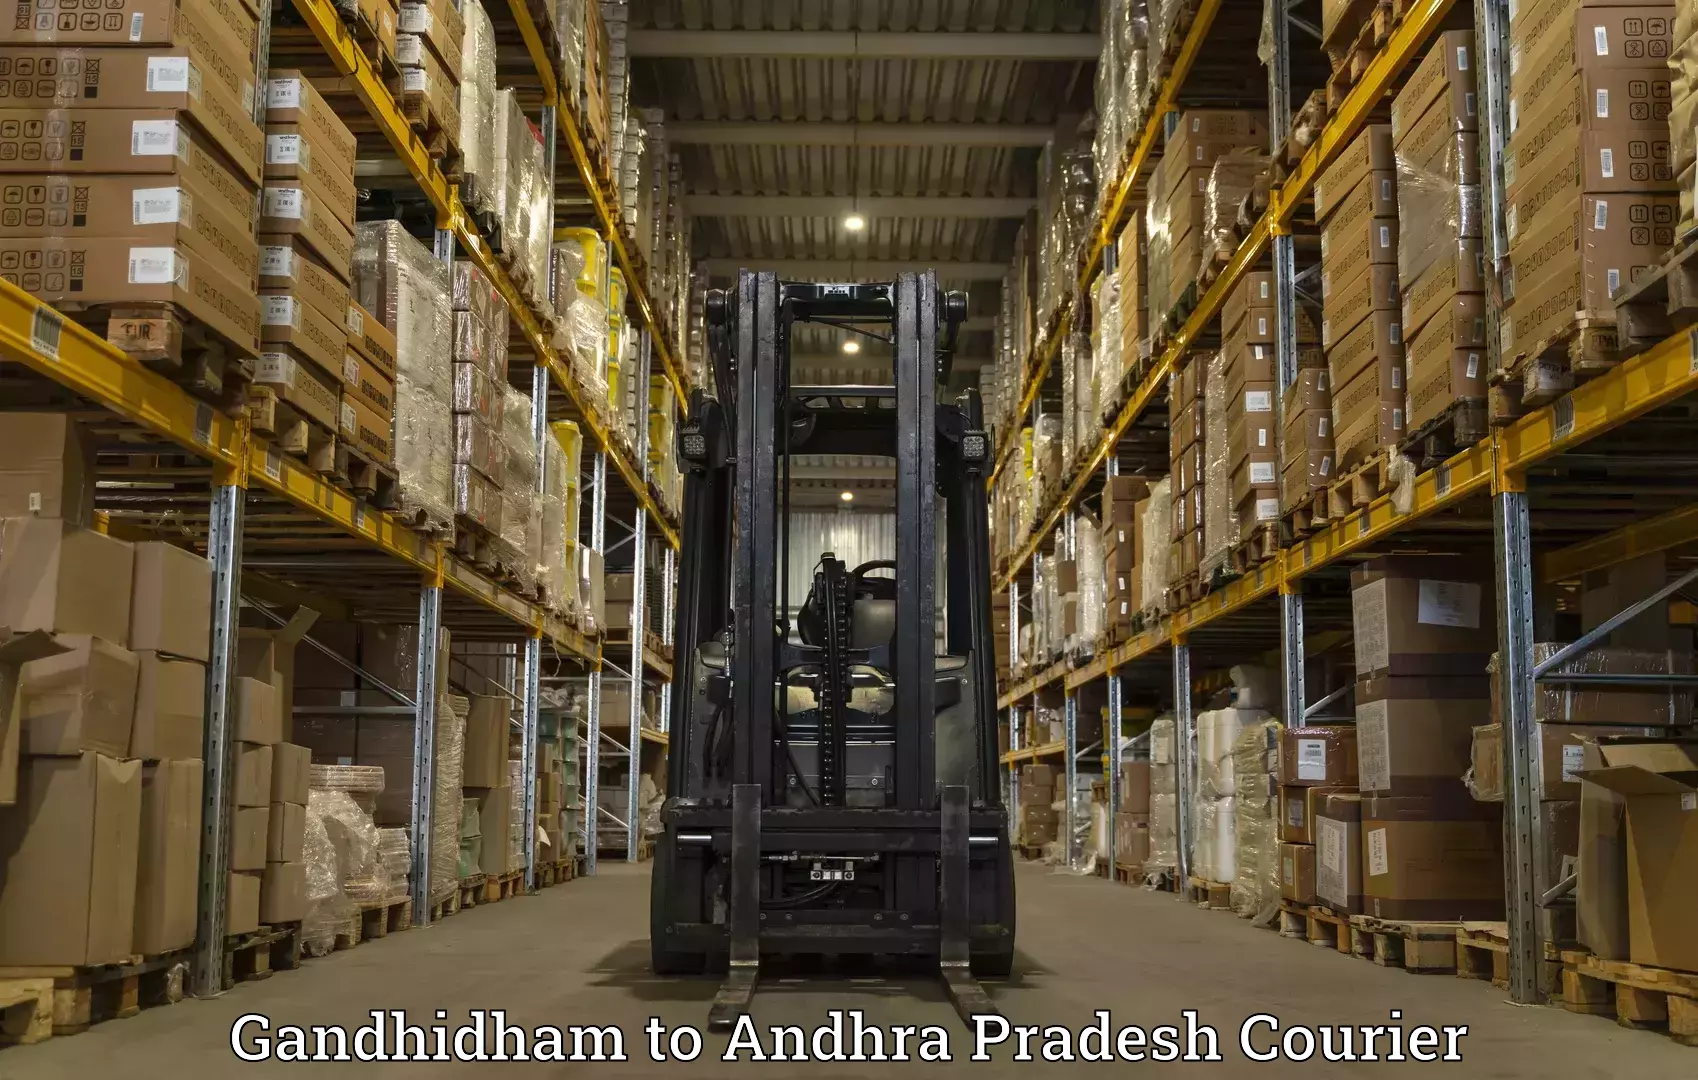 Personal courier services Gandhidham to Gopalapuram